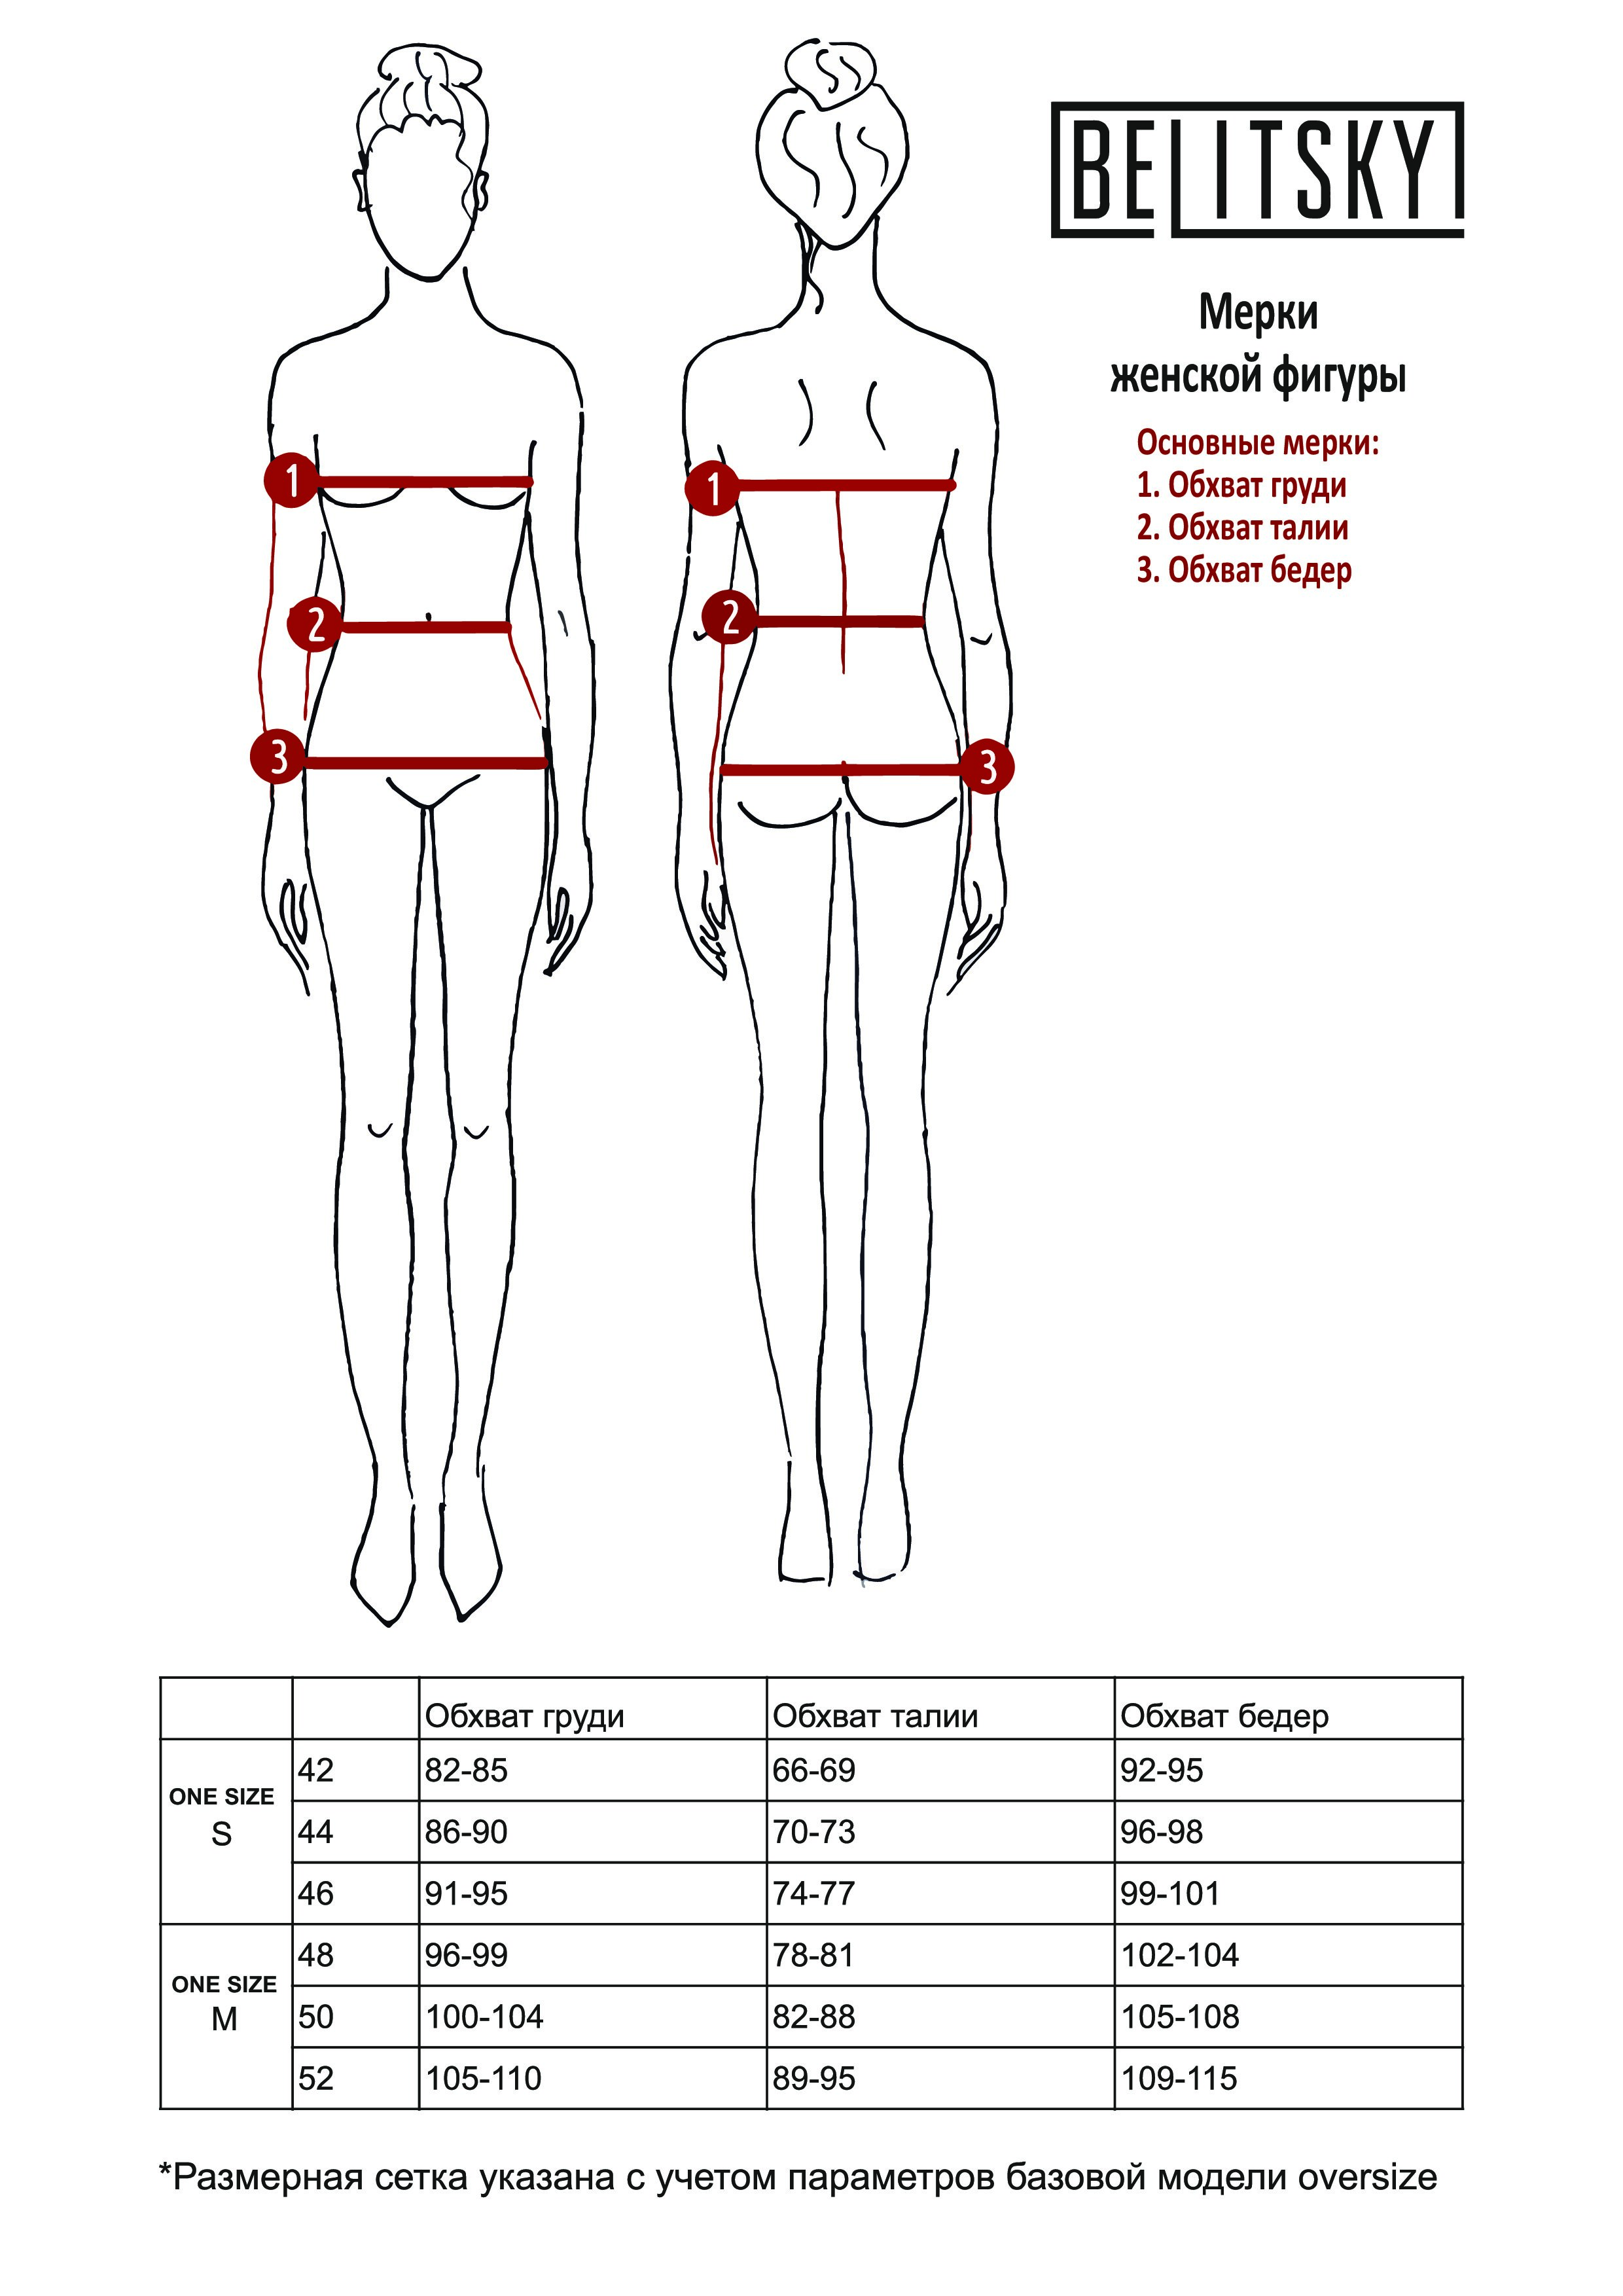 как правильно измерить объем груди у женщин фото 65